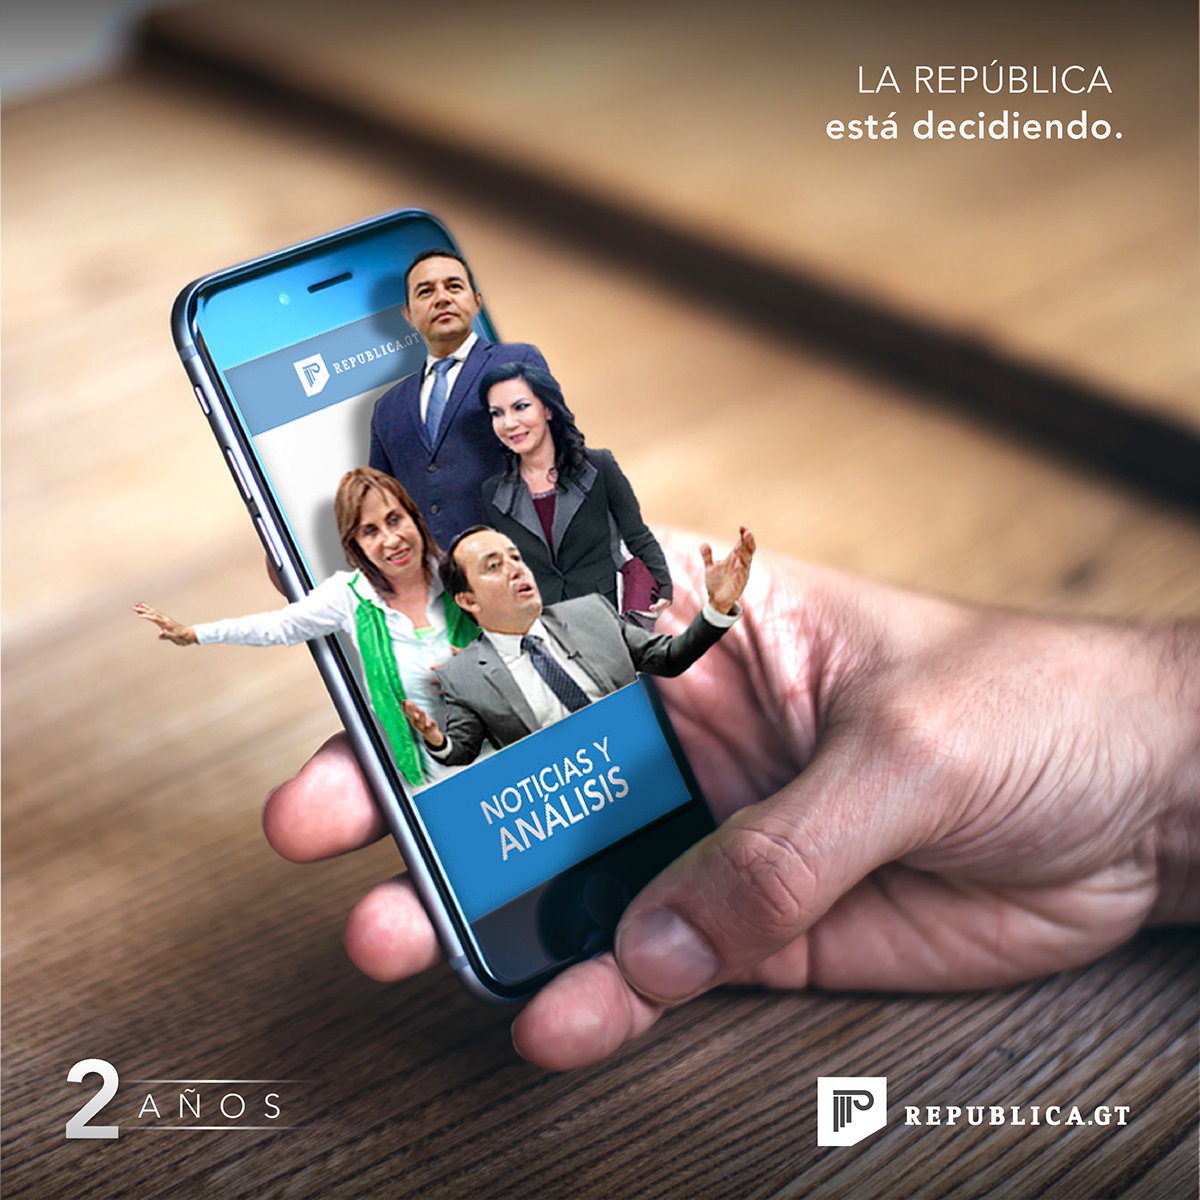 republica Guatemala brand campain add Campaña guillermo Gede duran